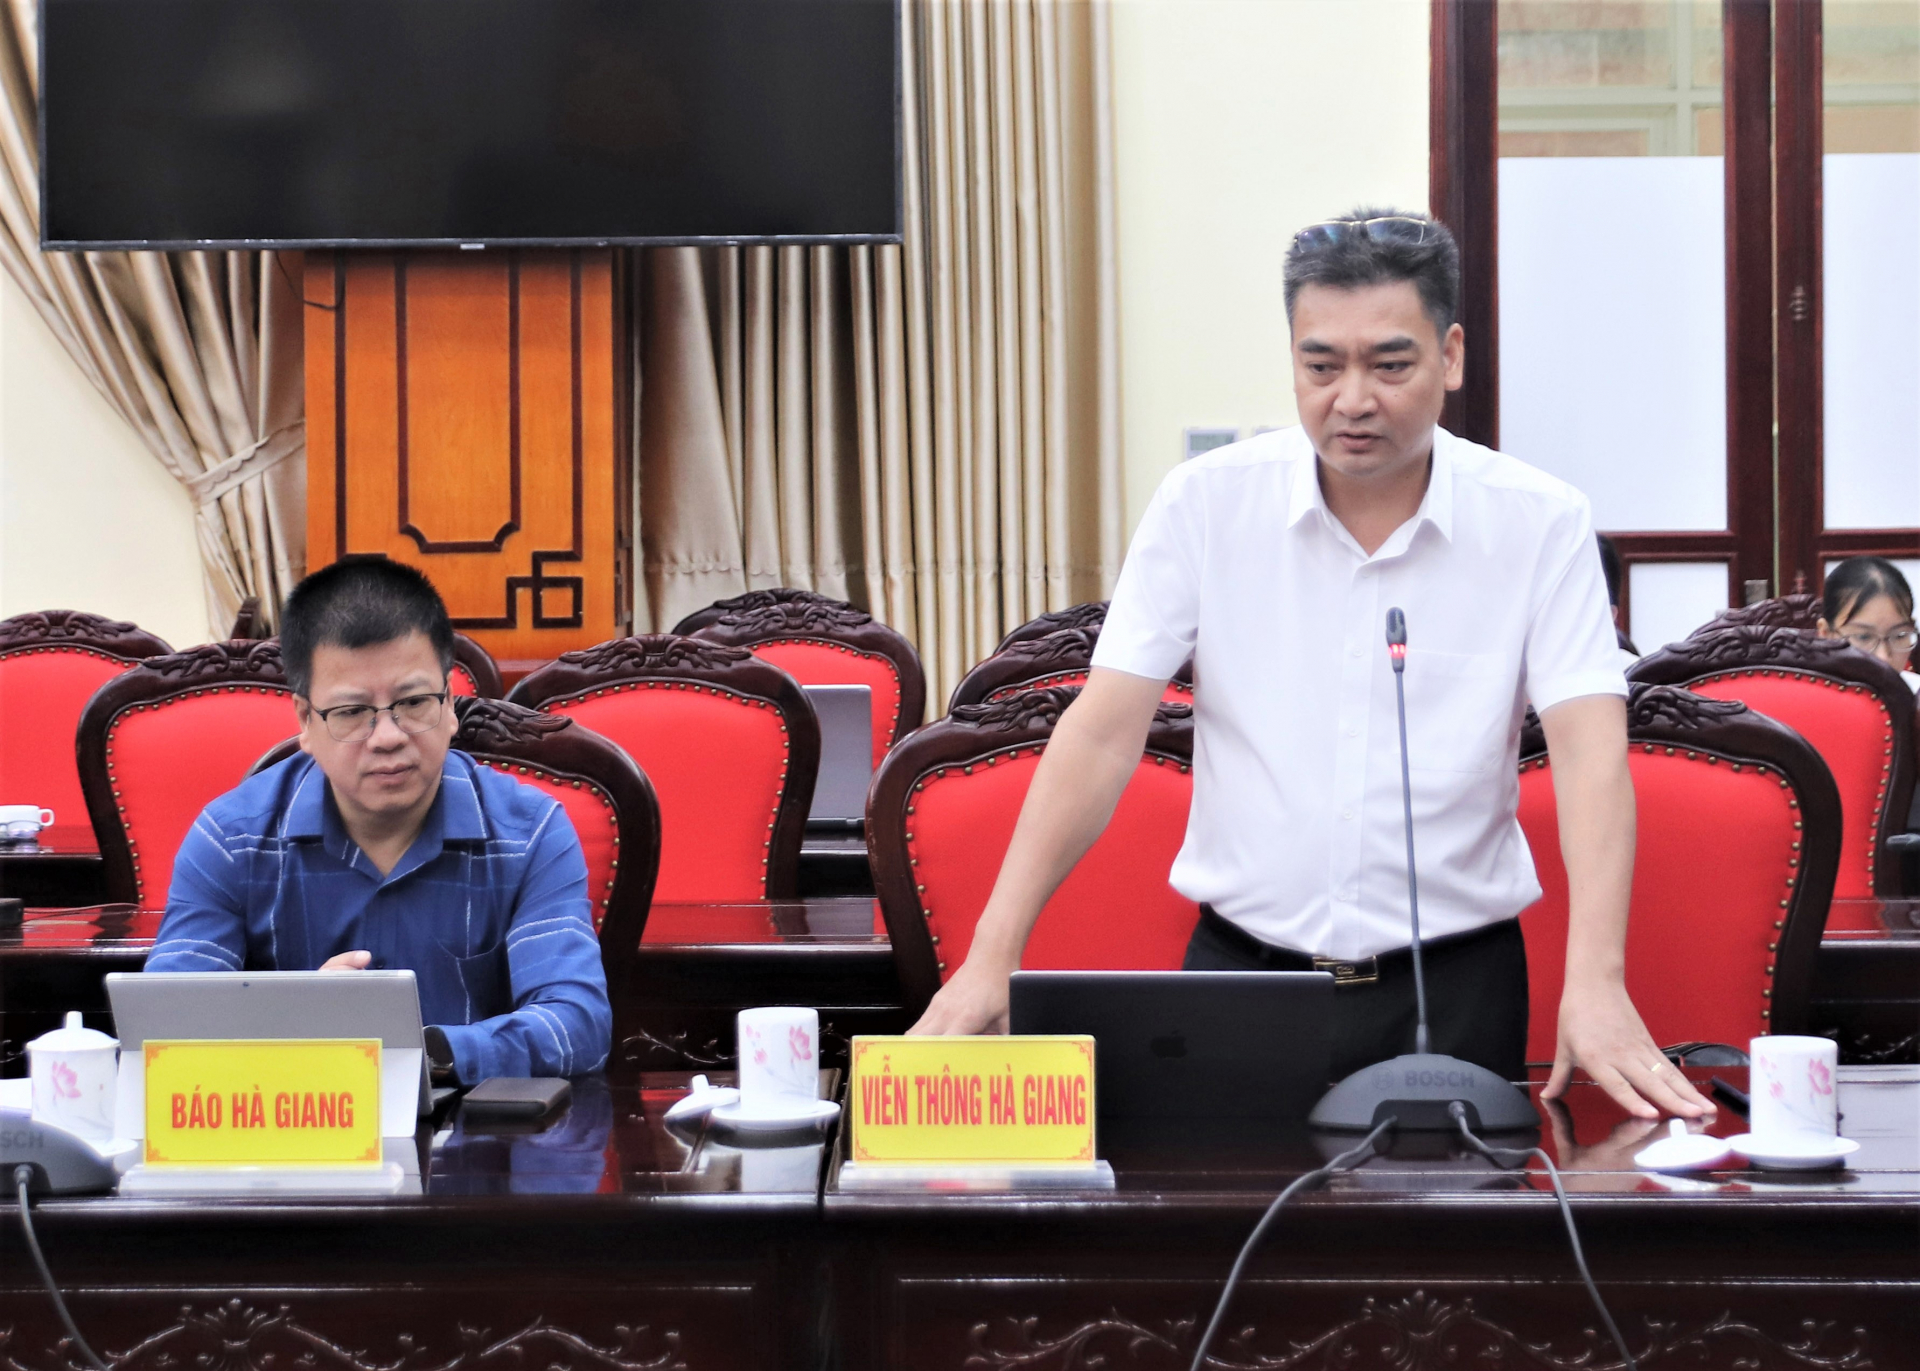 Lãnh đạo VNPT Hà Giang báo cáo kết quả triển khai cơ sở dữ liệu quốc gia về cán bộ, công chức, viên chức trên địa bàn tỉnh.